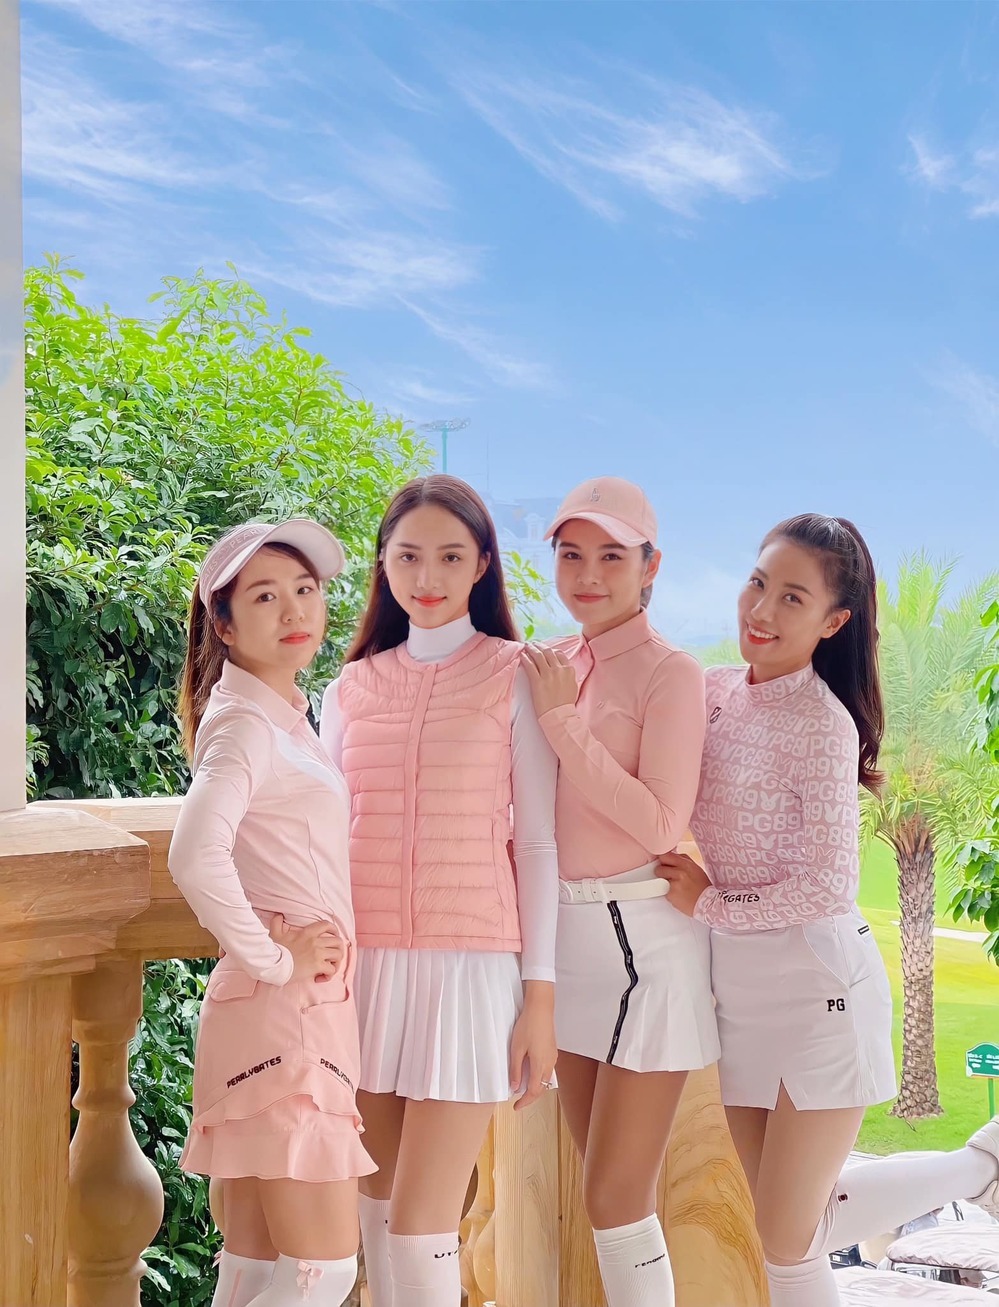 Ca sĩ Hương Giang (thứ 2 từ trái sang) gần đây cũng yêu thích golf. Cô thường tụ tập bạn bè, có khi đi cùng người yêu để luyện tập.